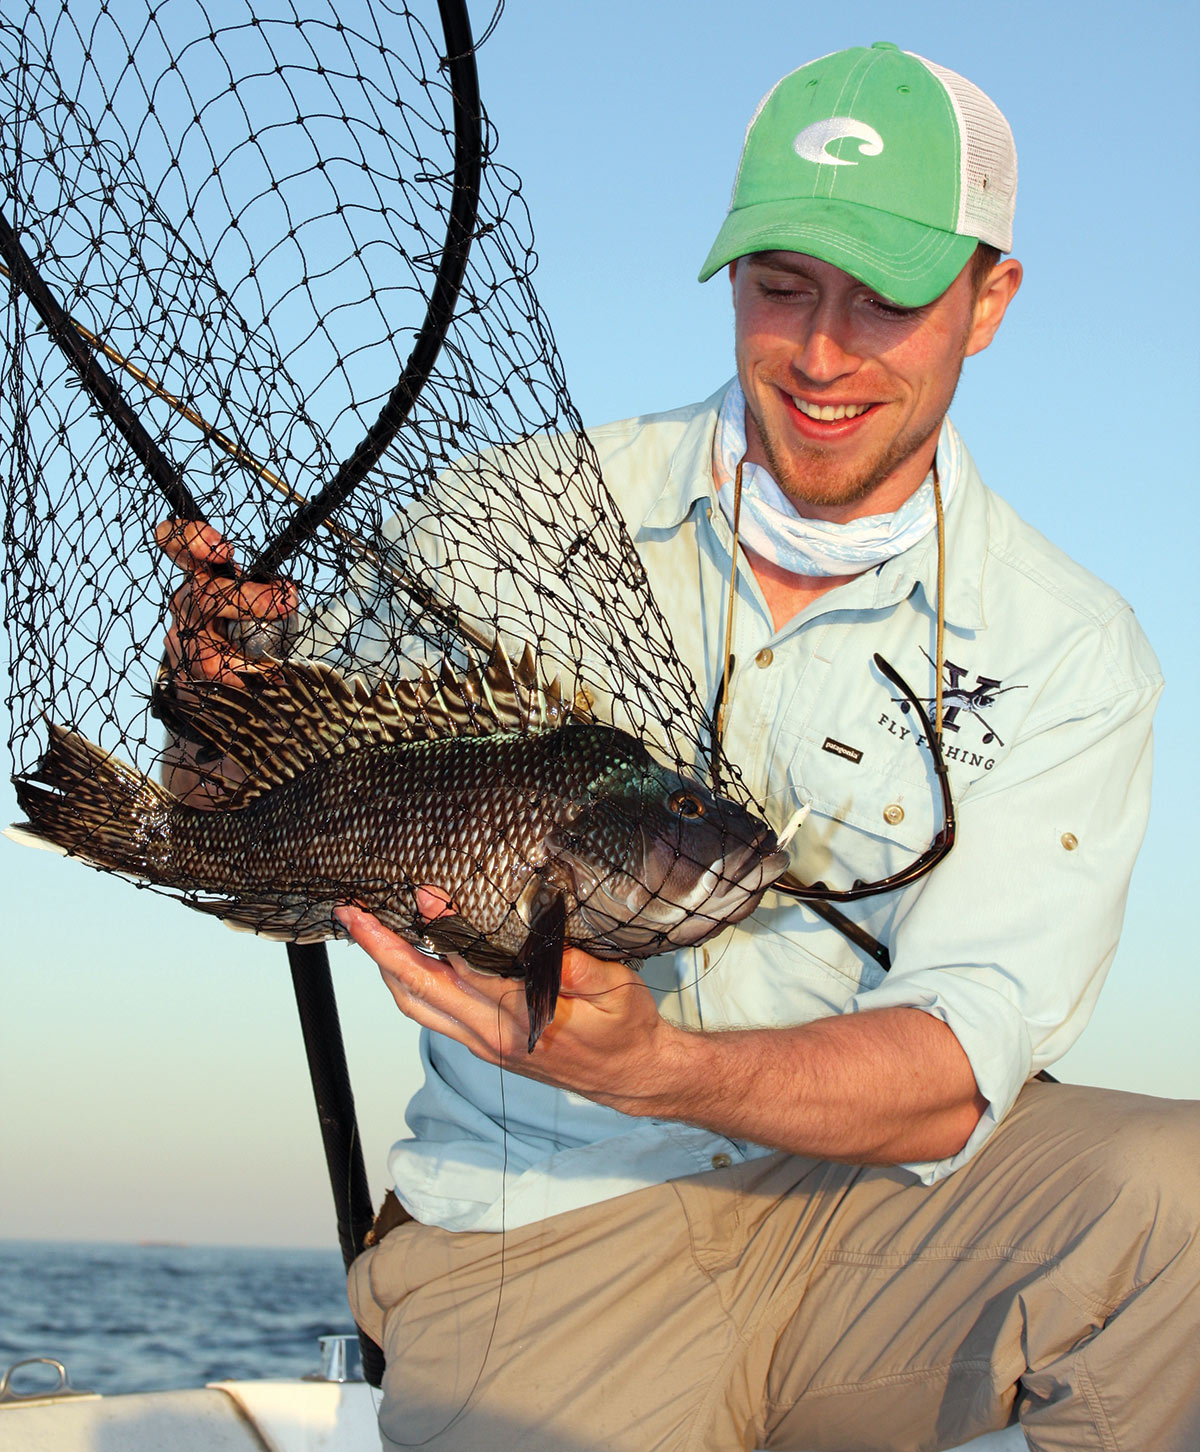 Man in cap showing off black sea bass inside fish net